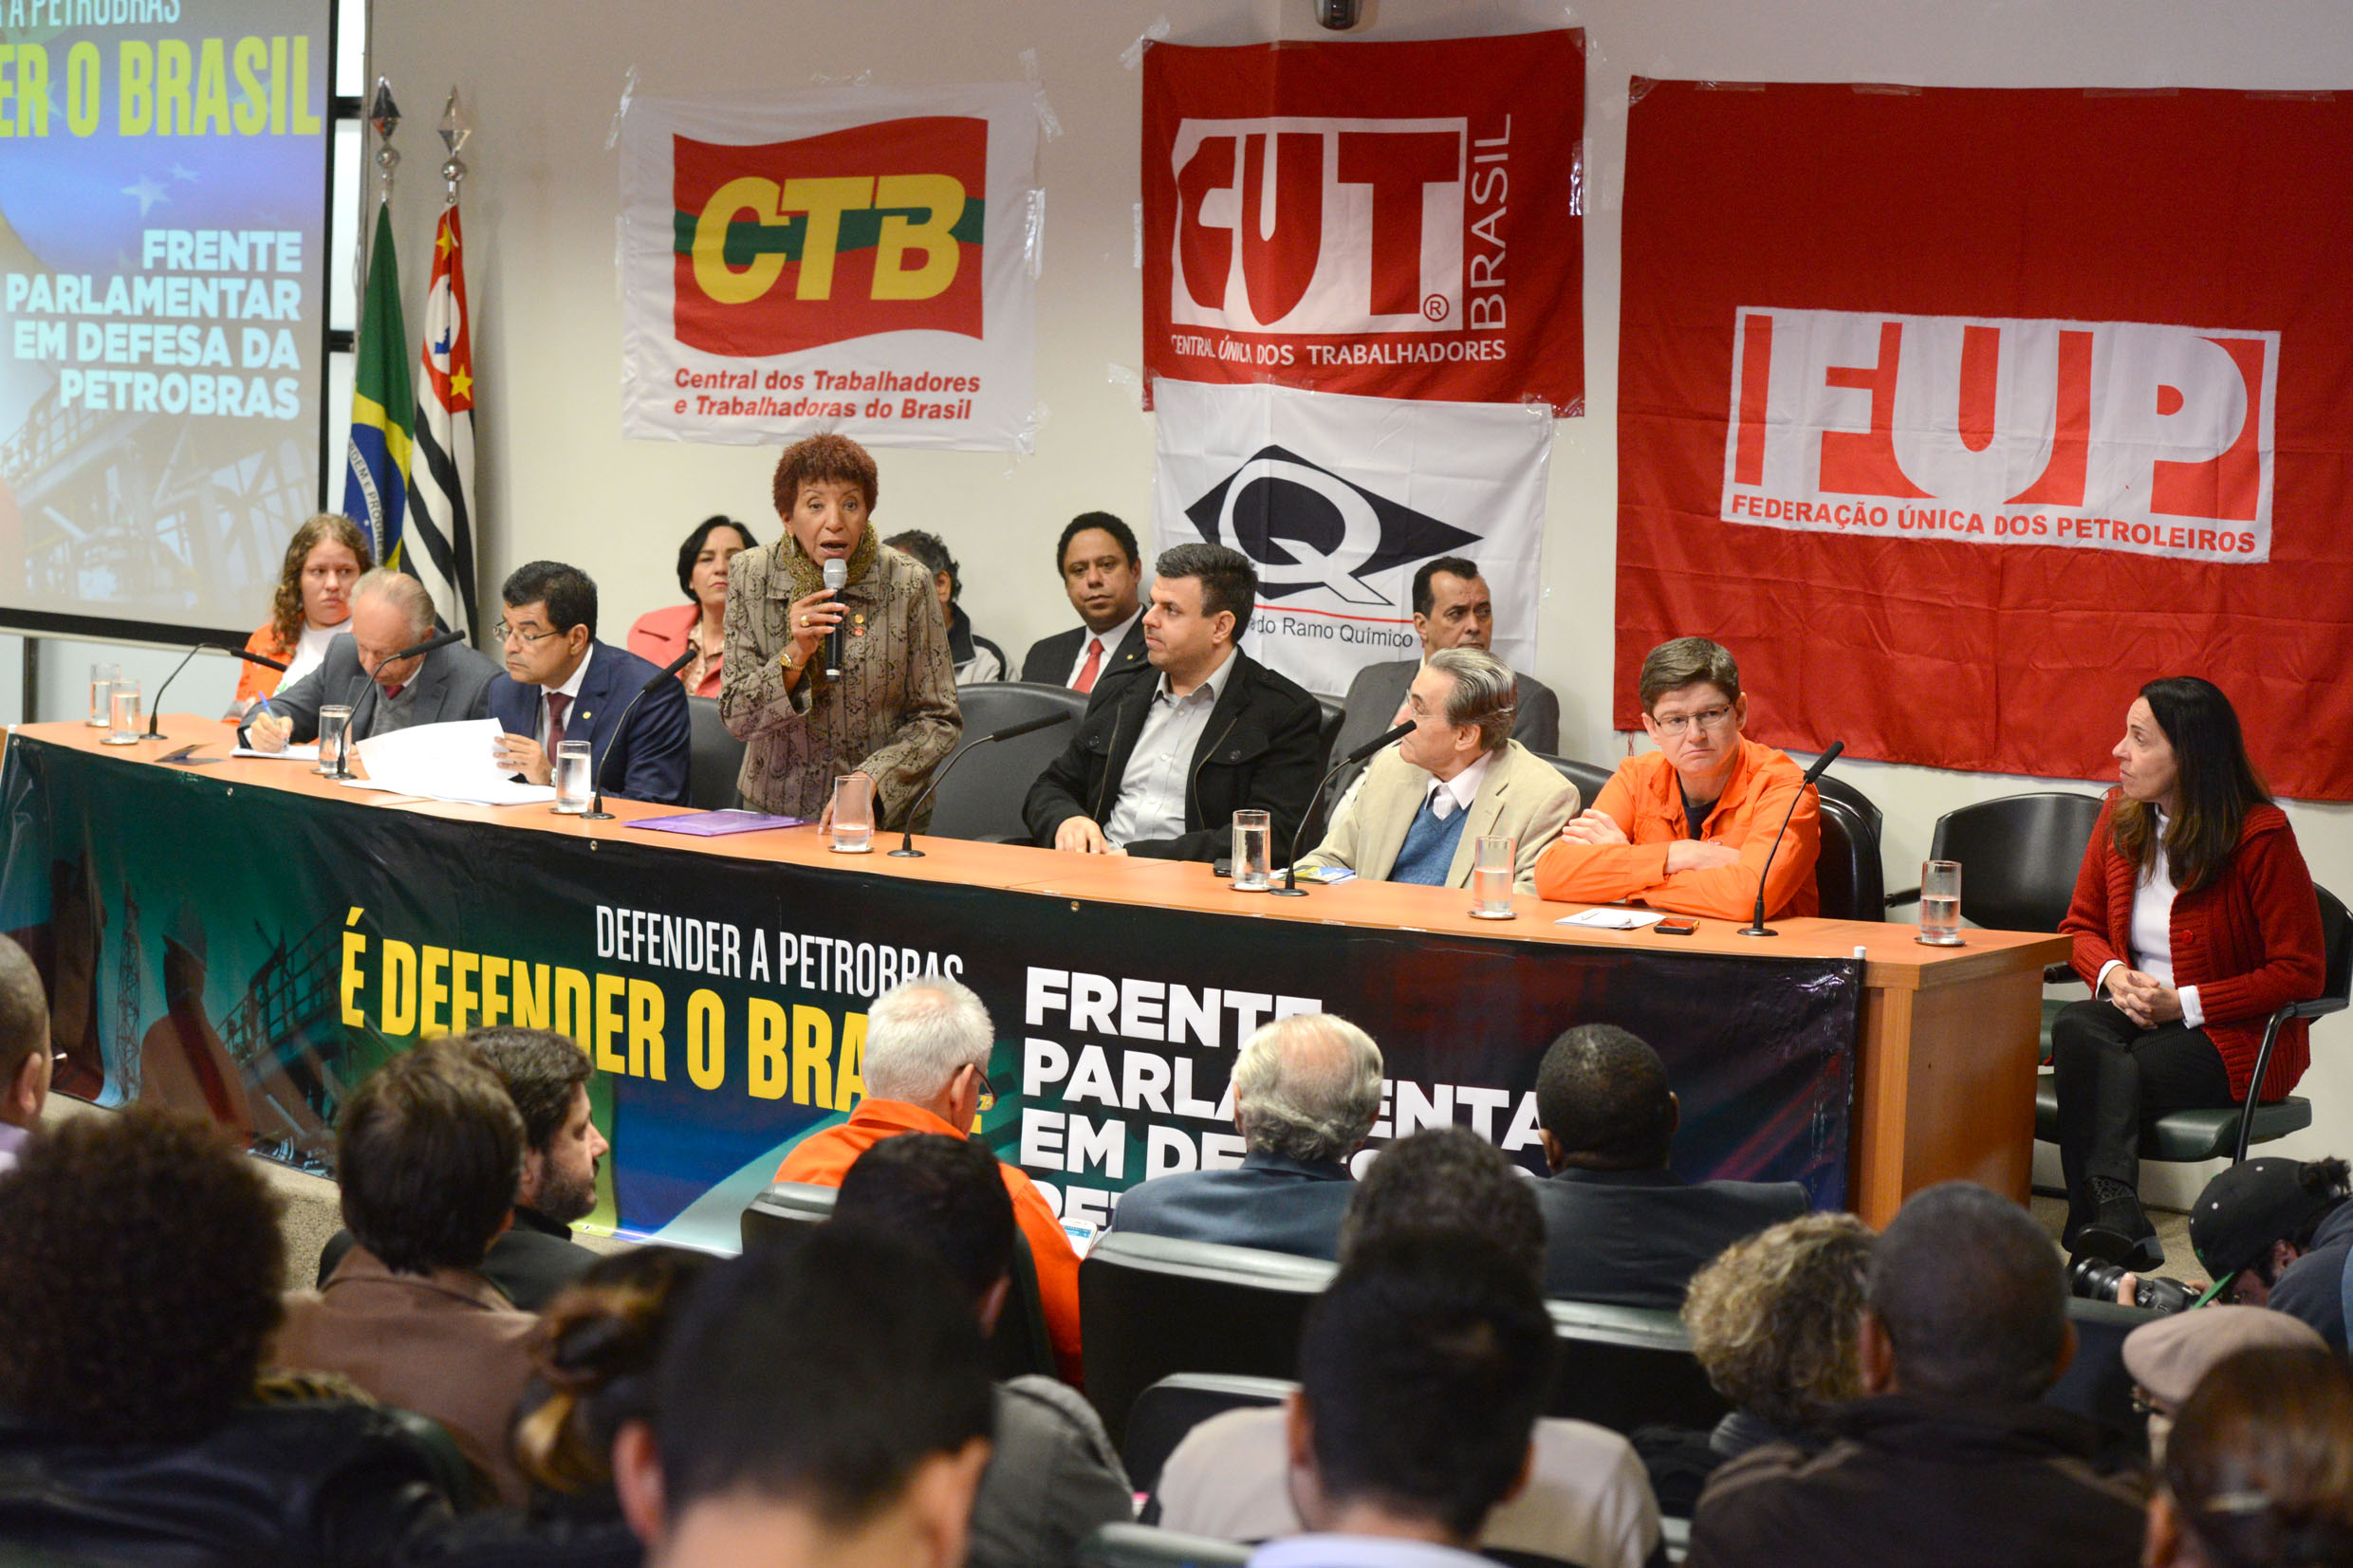  Lanamento da Frente Parlamentar em Defesa da Petrobras <a style='float:right;color:#ccc' href='https://www3.al.sp.gov.br/repositorio/noticia/N-06-2015/fg171204.jpg' target=_blank><i class='bi bi-zoom-in'></i> Clique para ver a imagem </a>